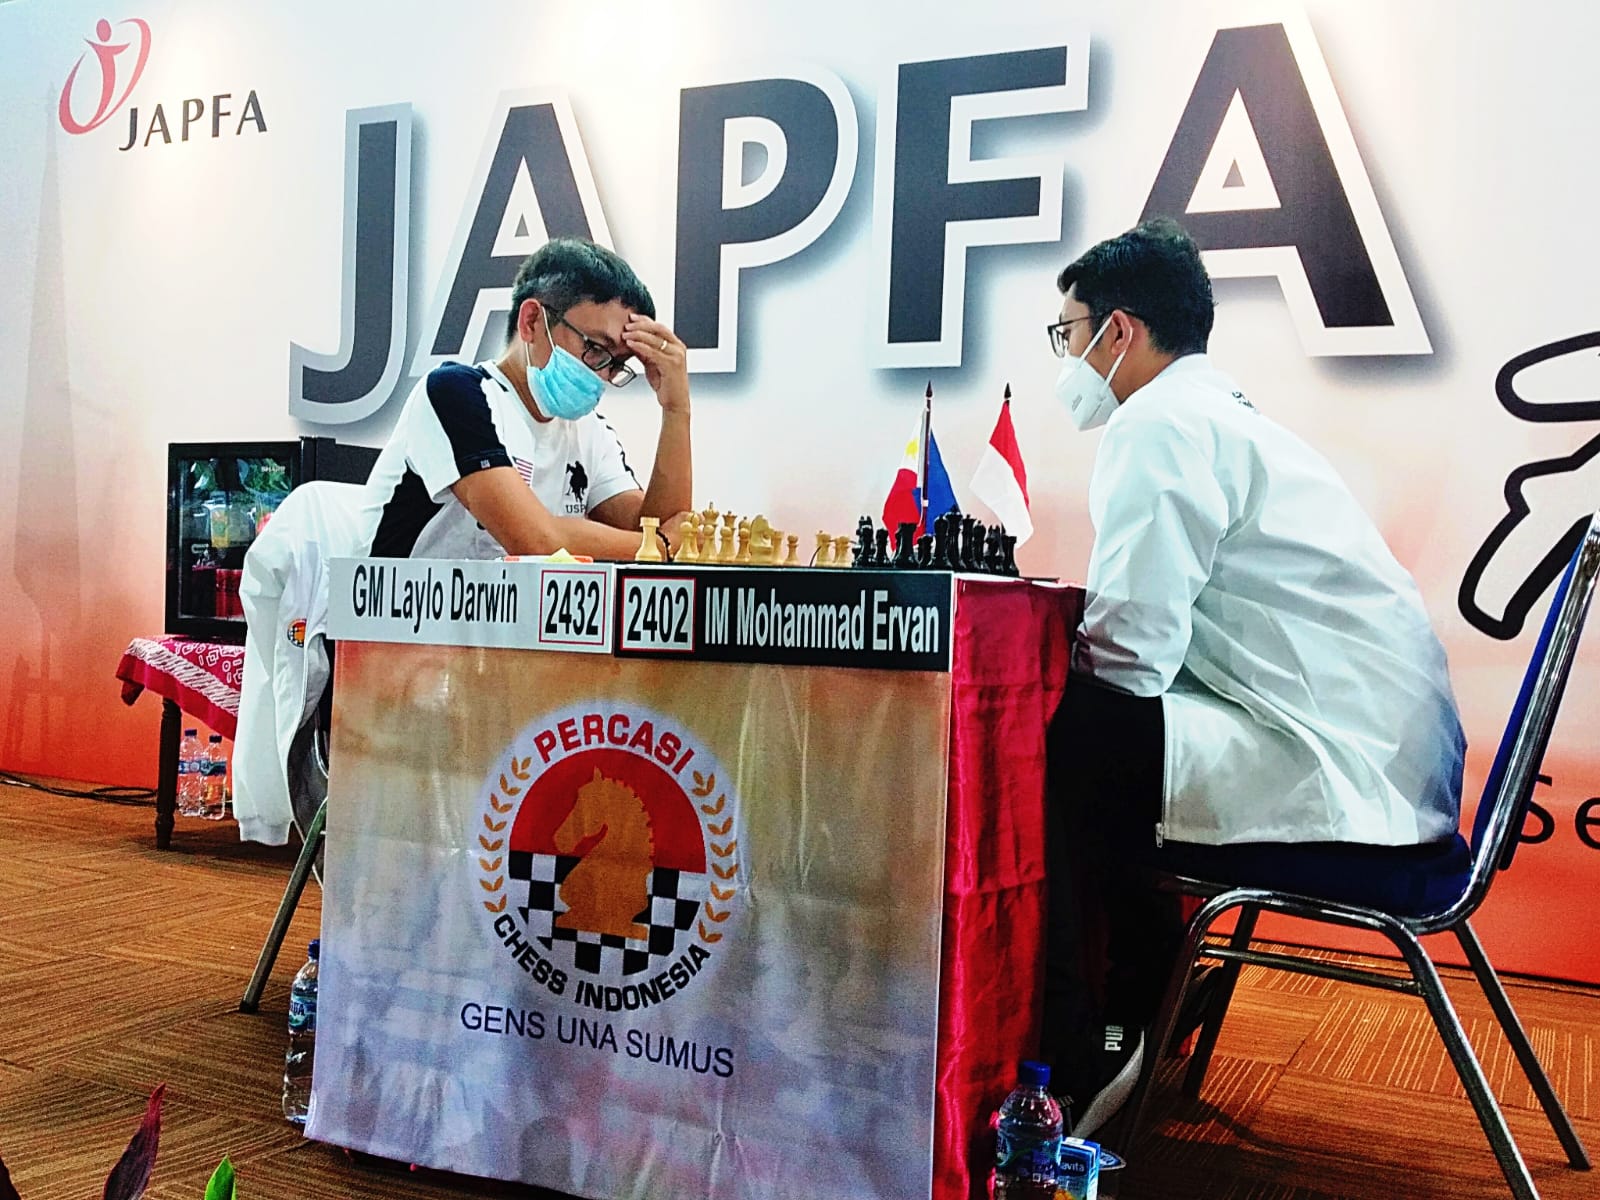 Remis di Hari Keempat JAPFA Chess Festival, Mohammad Ervan Jaga Keunggulan